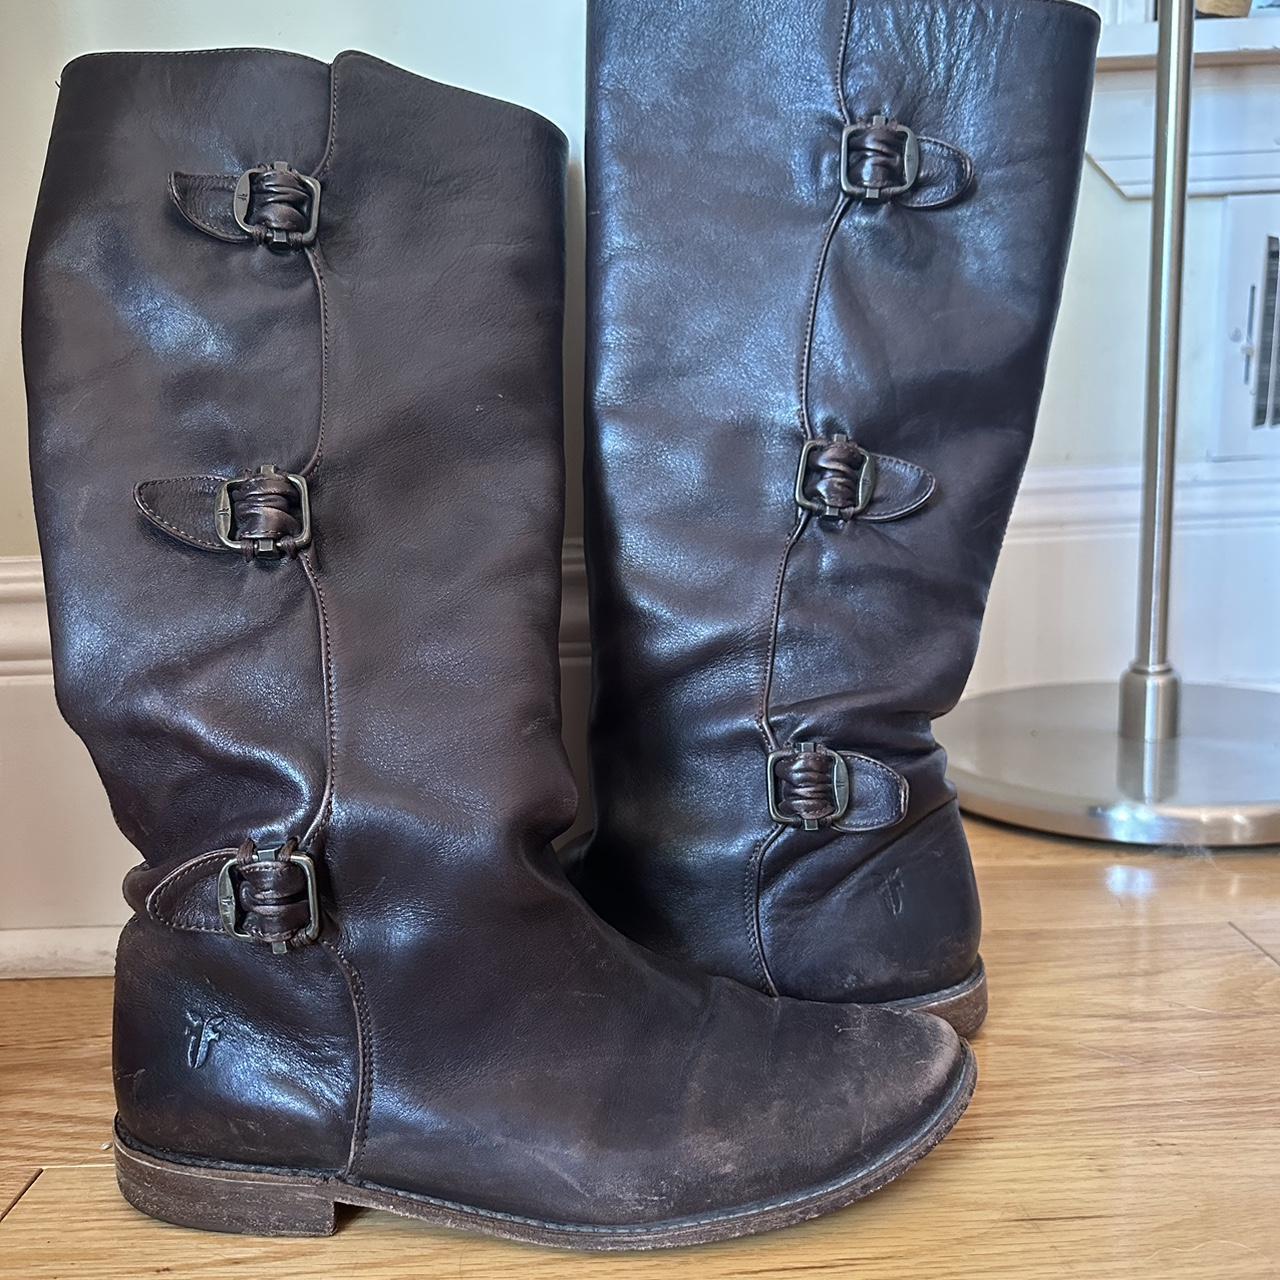 Vintage Leather FRYE Buckle Boots! - Excellent... - Depop